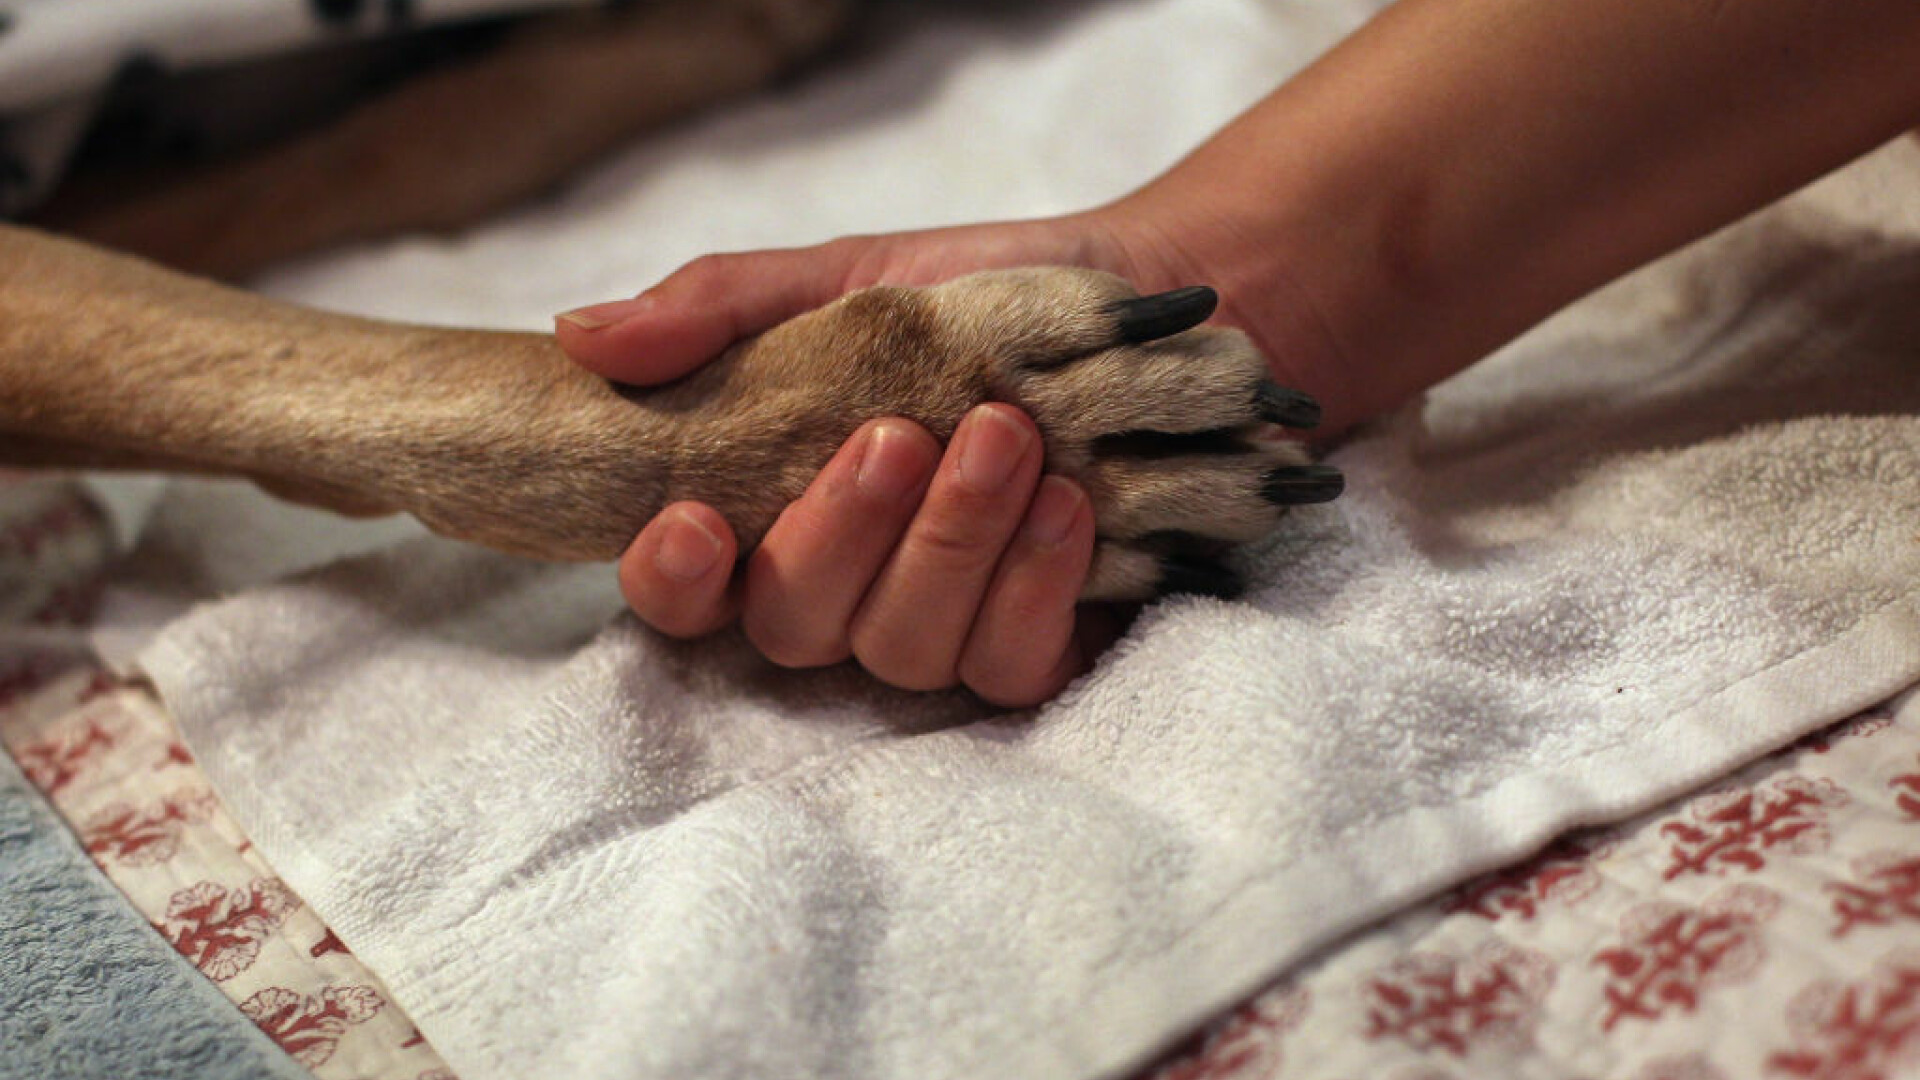 Descoperire șocană în Bacău: Zeci de câini morți, la un adăpost canin. Unii au fost băgați vii în saci și lăsați să se sufoce